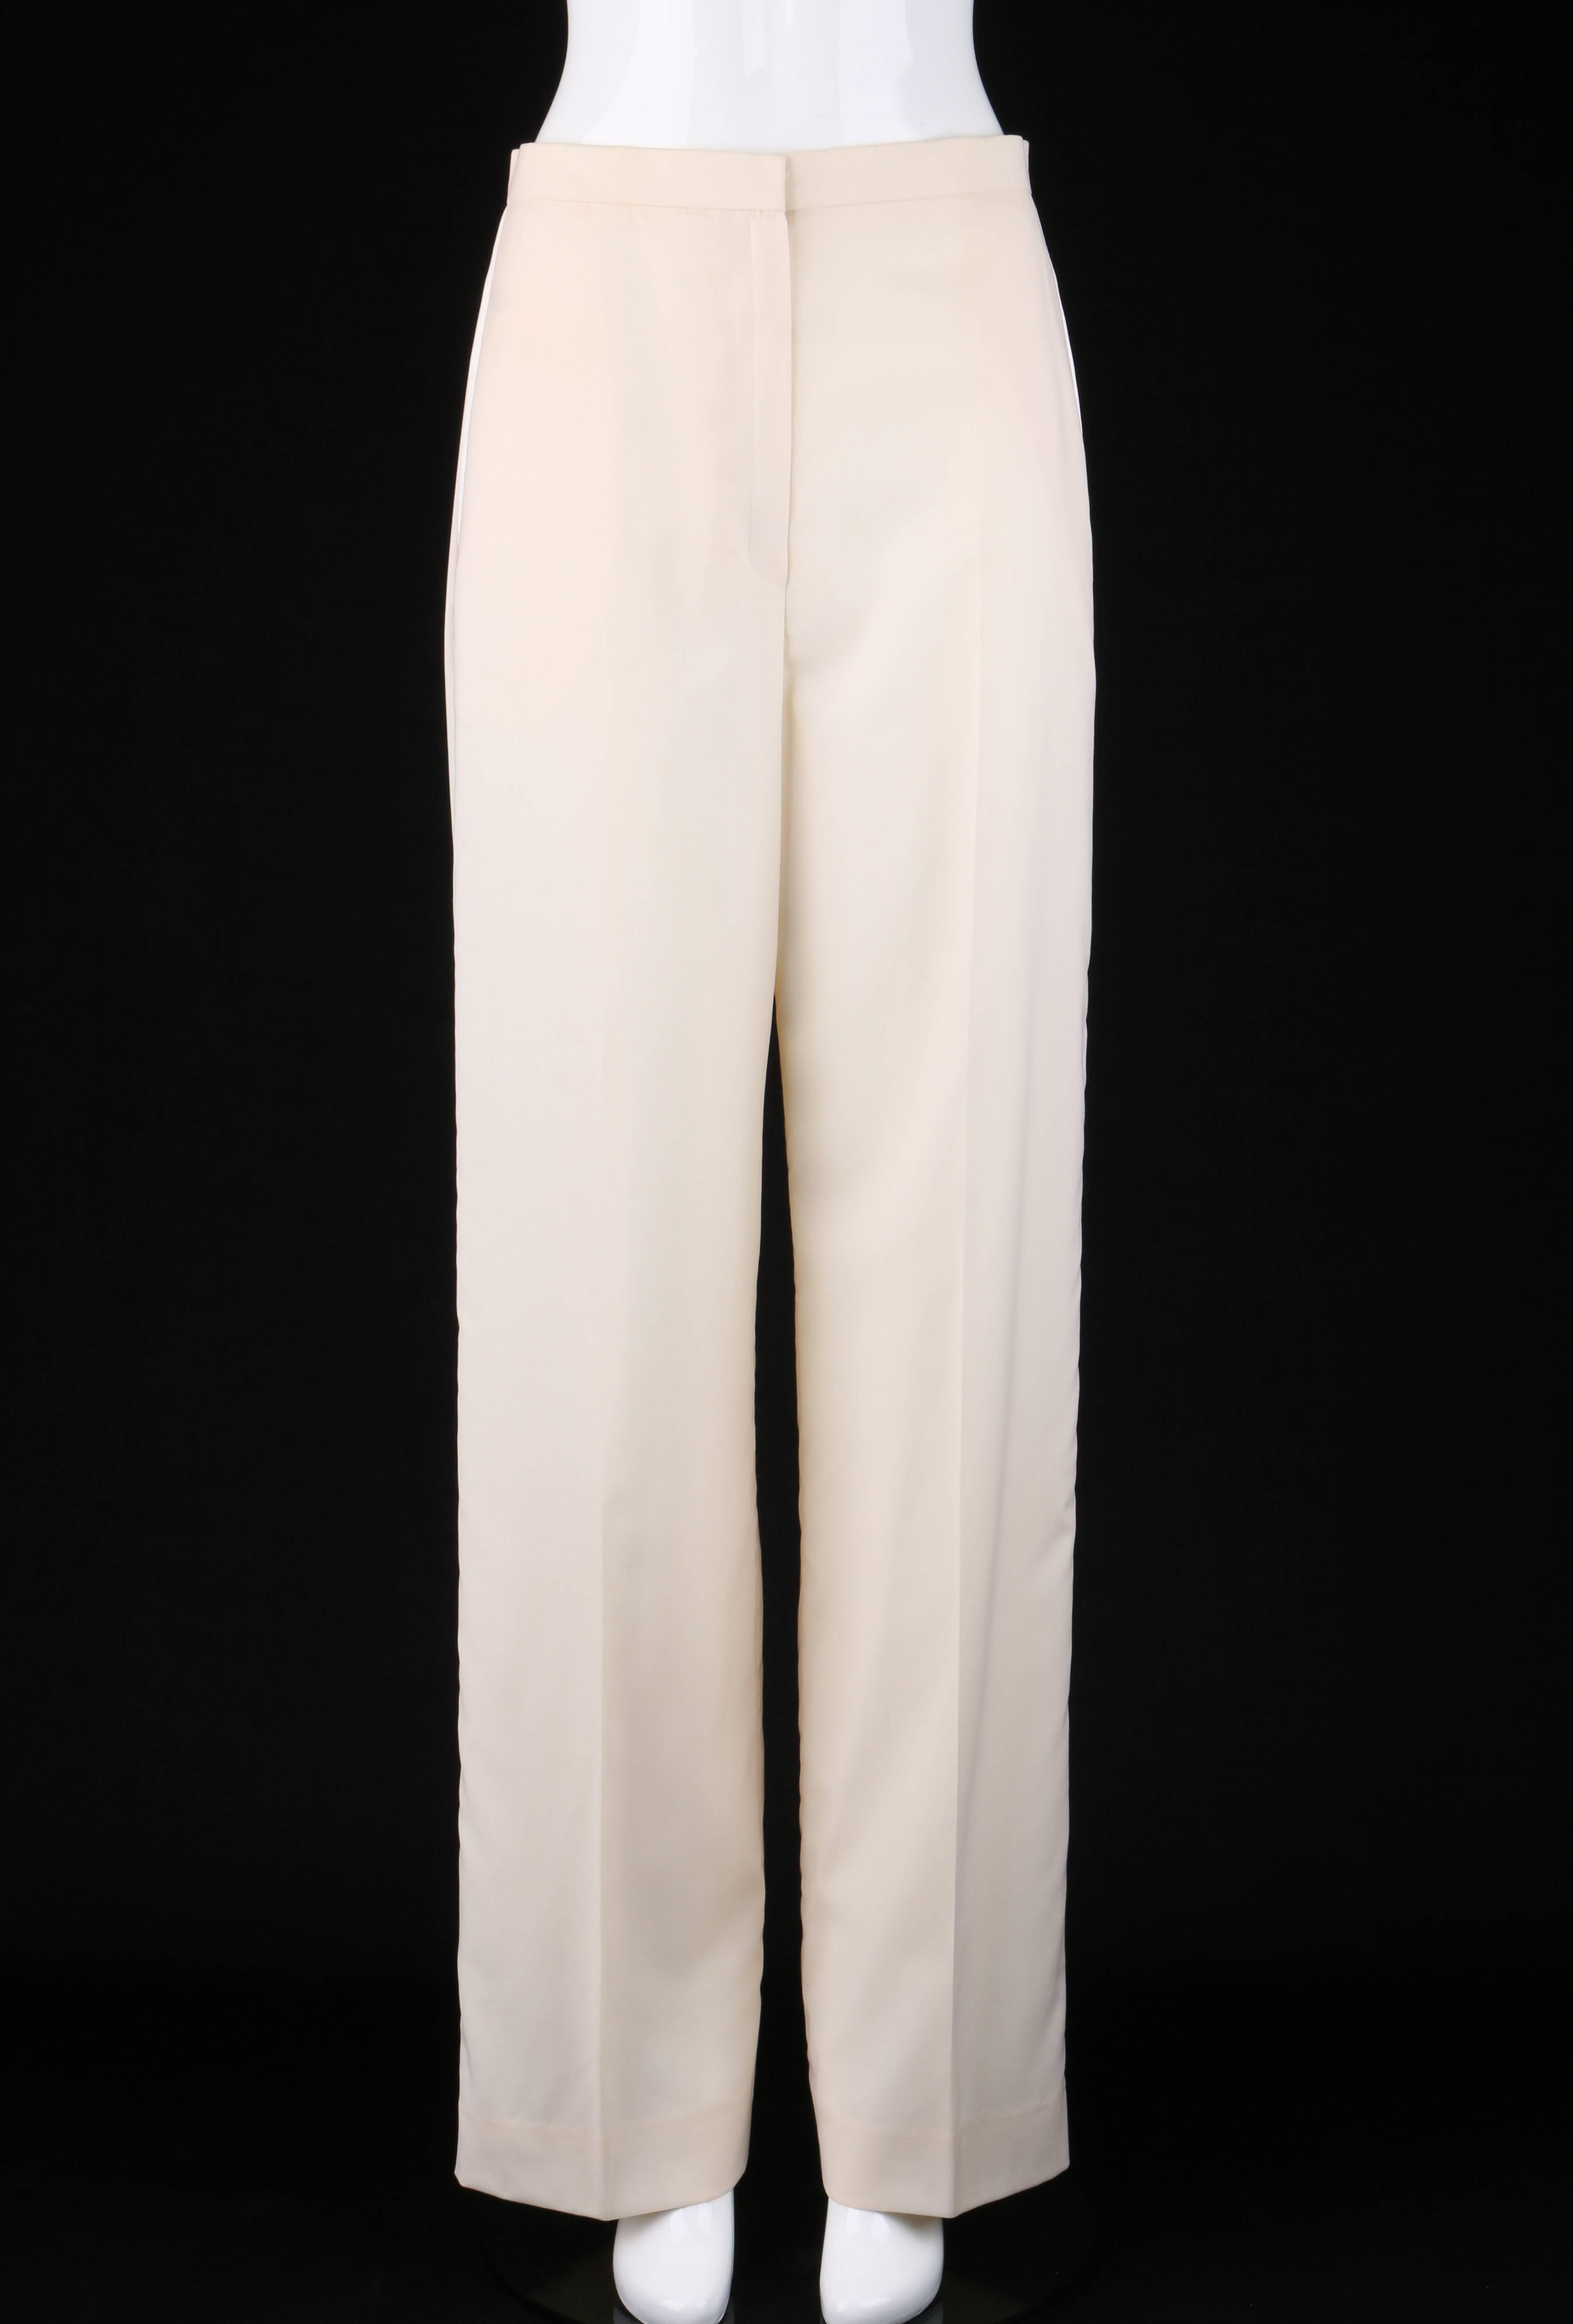 Beige GIVENCHY Couture S/S 1999 ALEXANDER McQUEEN 2 Piece Tuxedo Jacket Pant Suit Set